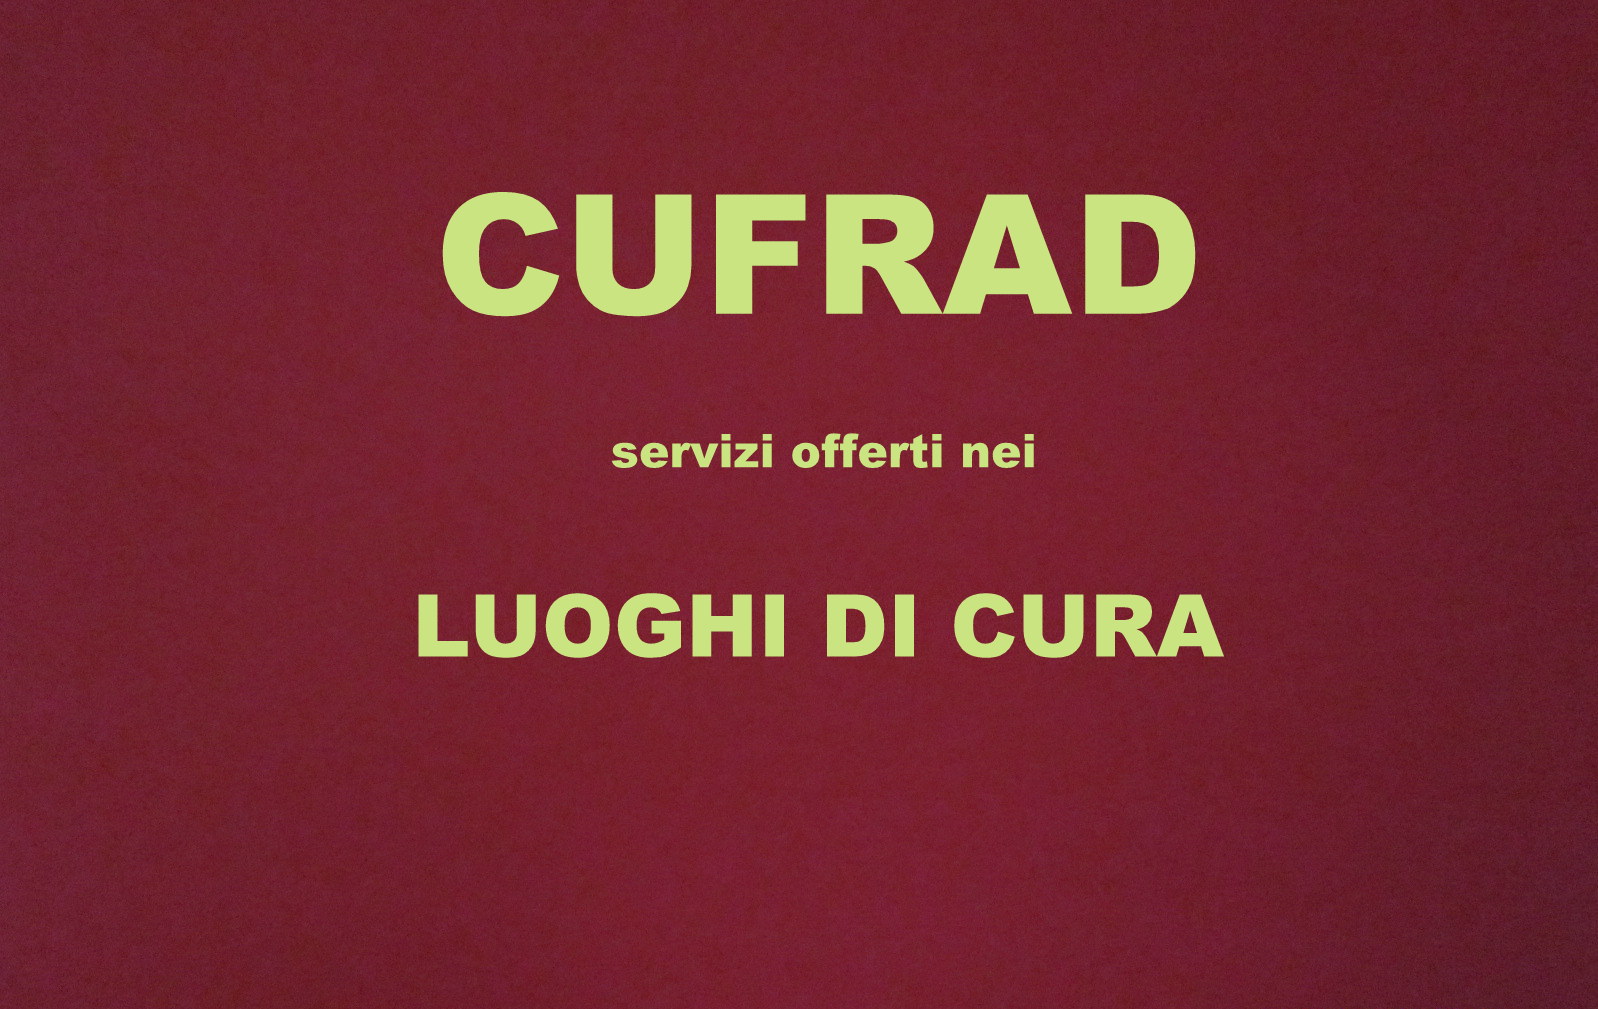 CUFRAD: I LUOGHI DI CURA RESIDENZIALE - SERVIZI OFFERTI